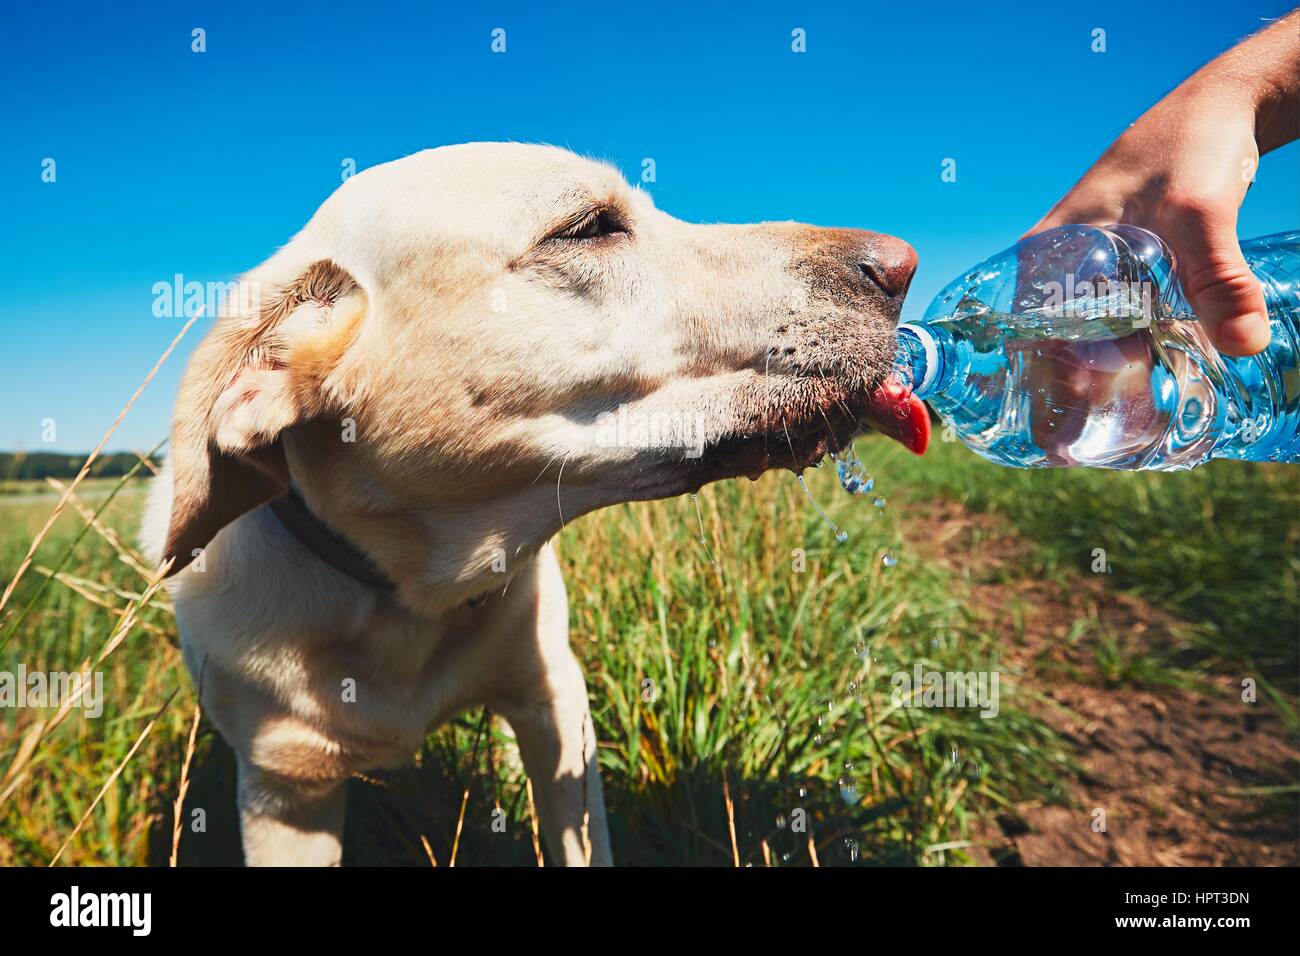 Día caluroso con el perro. Labrador retriever amarillo sediento de beber agua de la botella de plástico de su propietario. Foto de stock